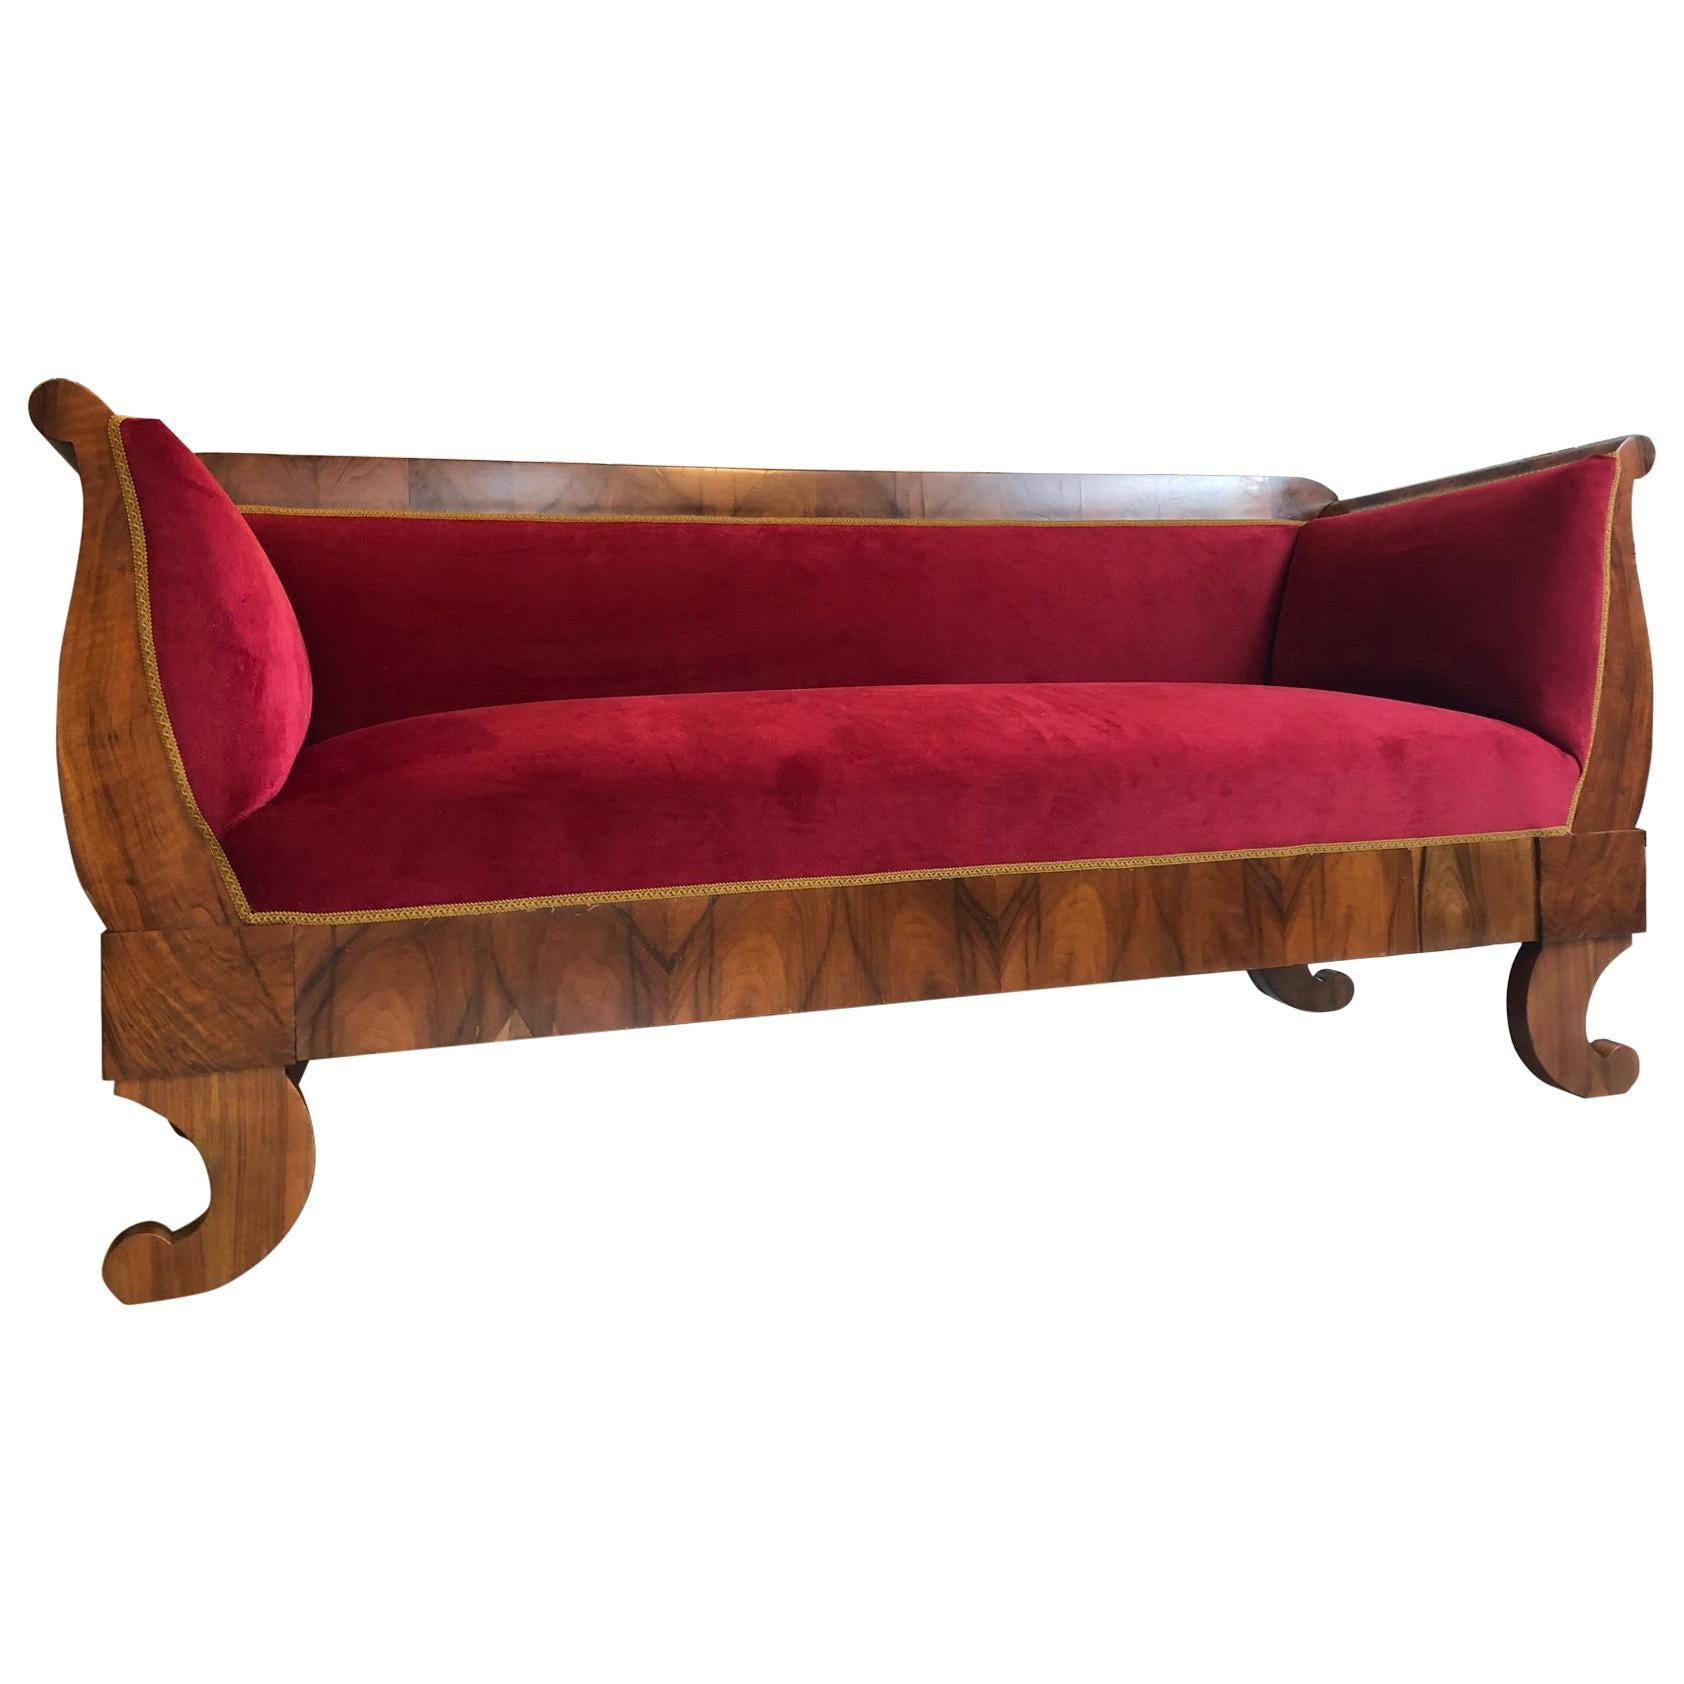 Restored Original Biedermeier Sofa Made of Walnut, Red Velvet For Sale